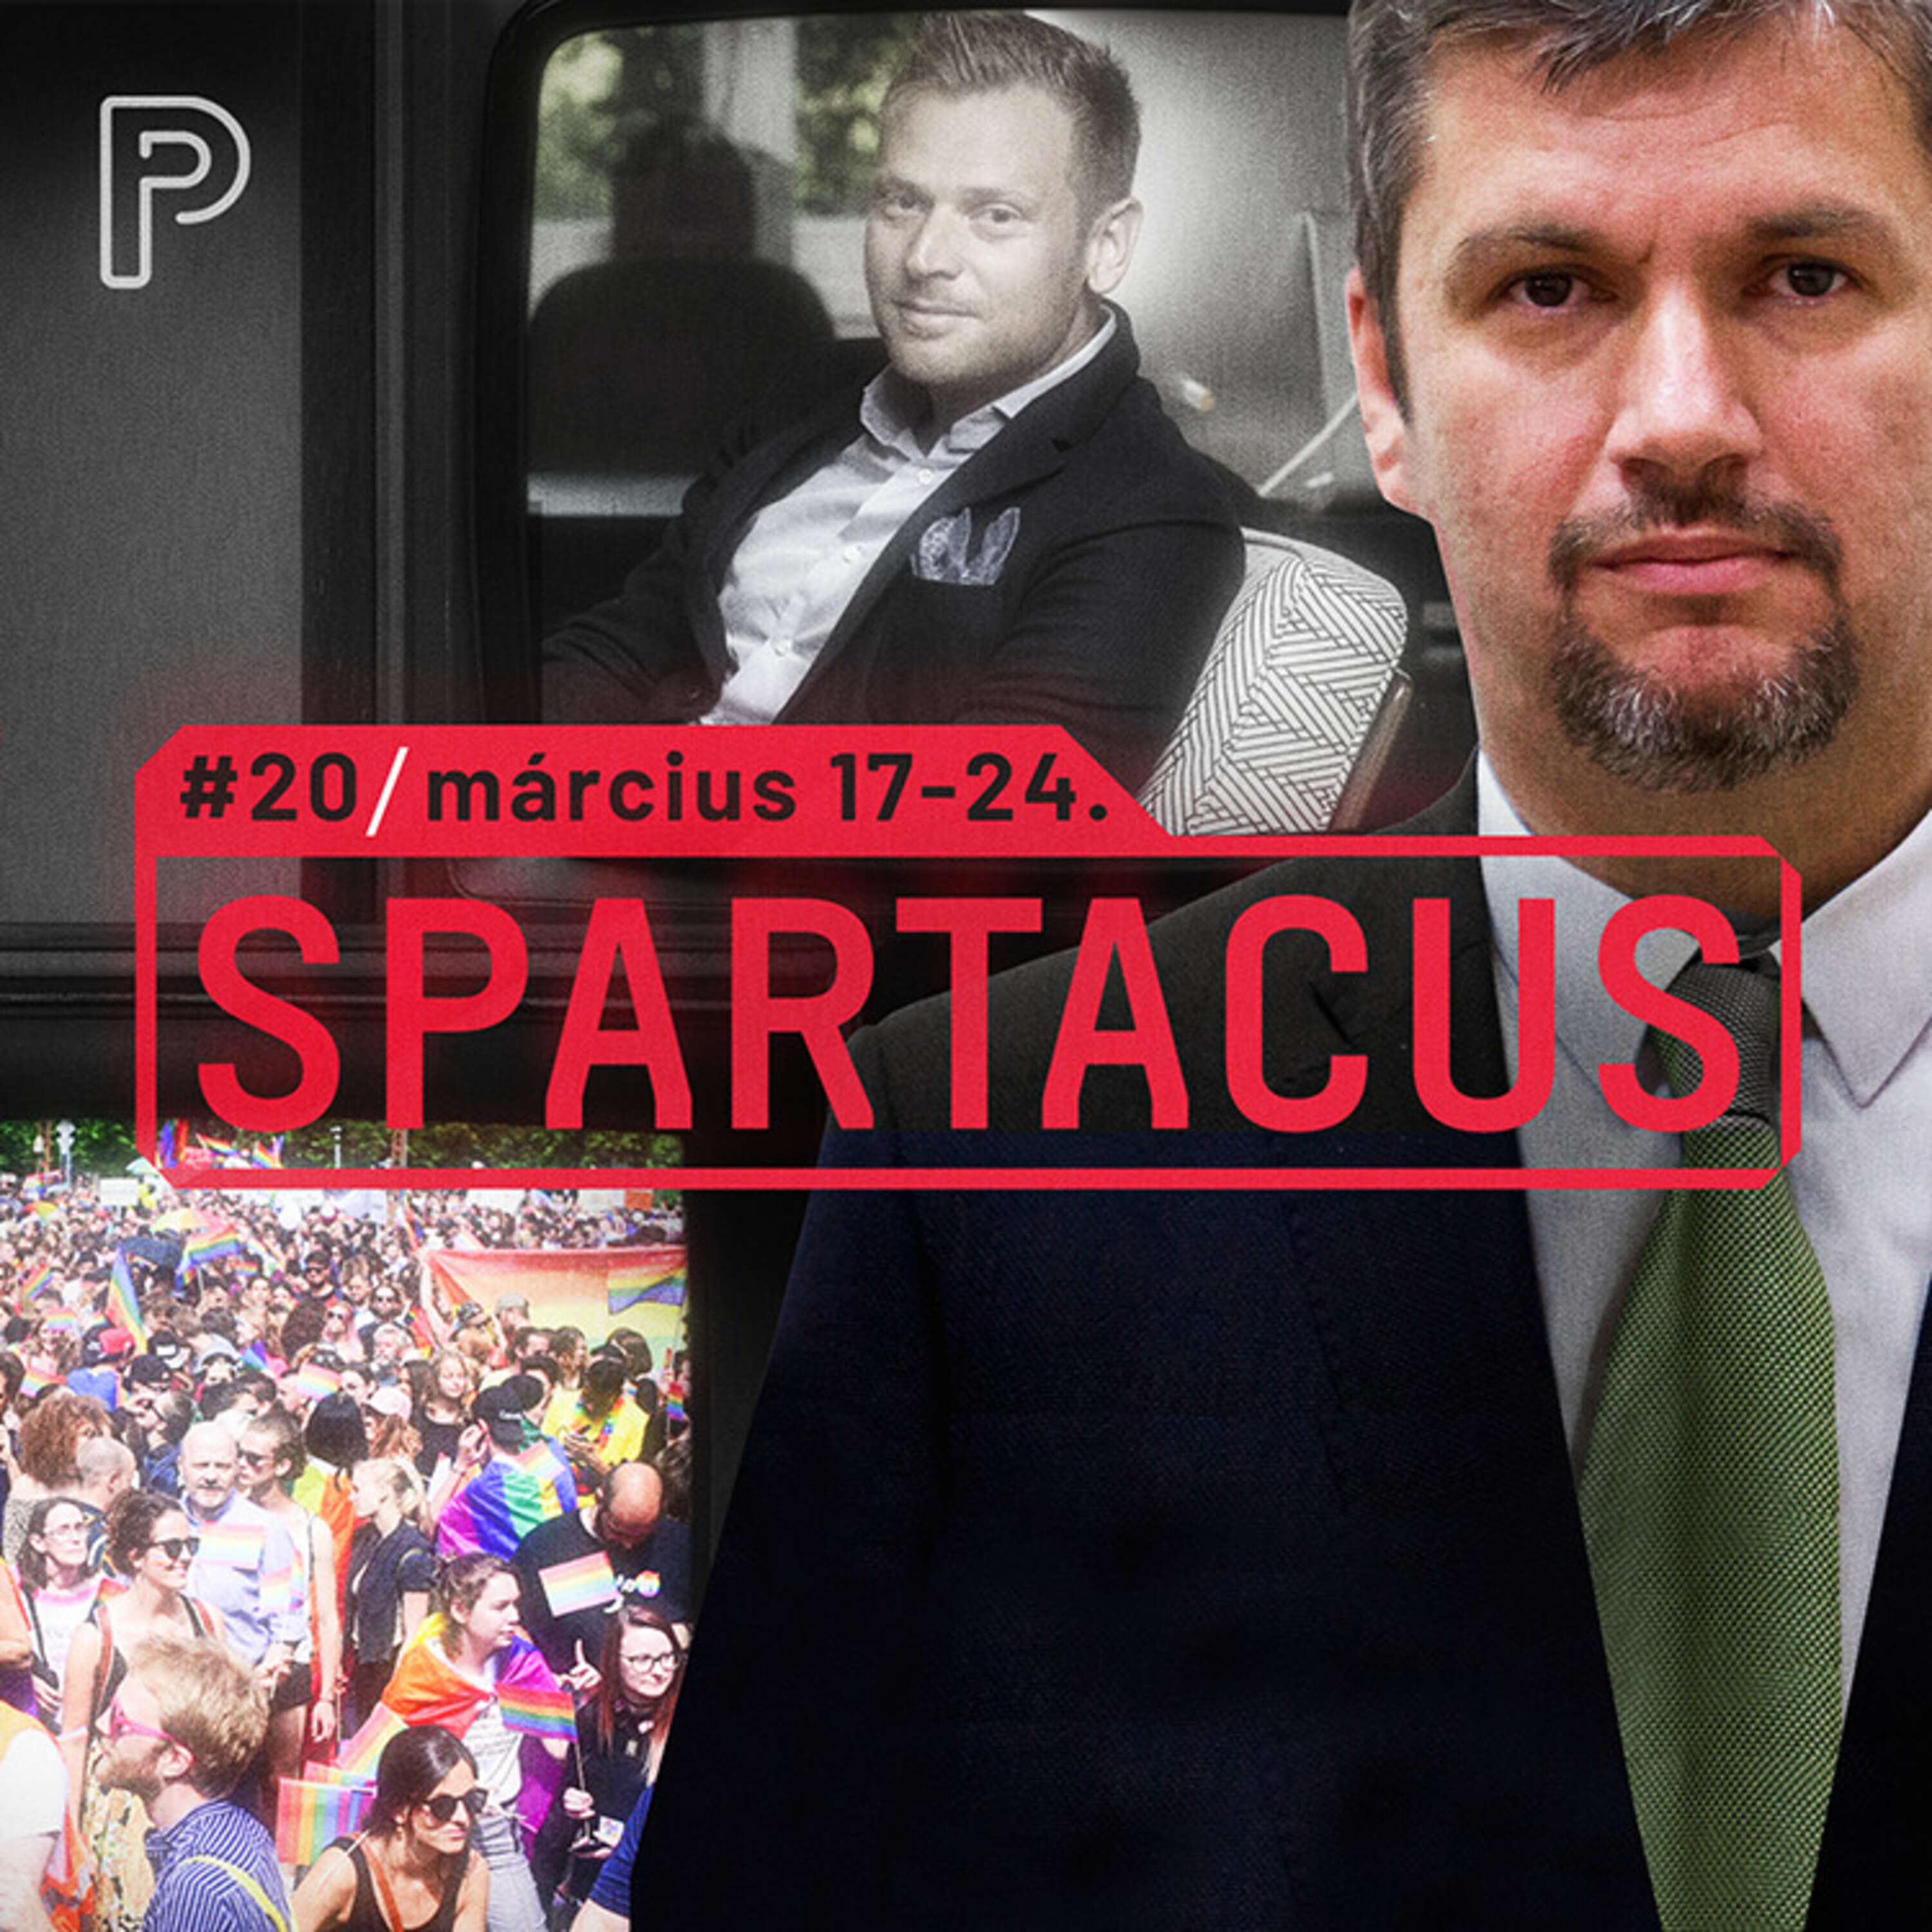 Így kattanna a bilincs a NER korruptjainak csuklóján | Spartacus #21